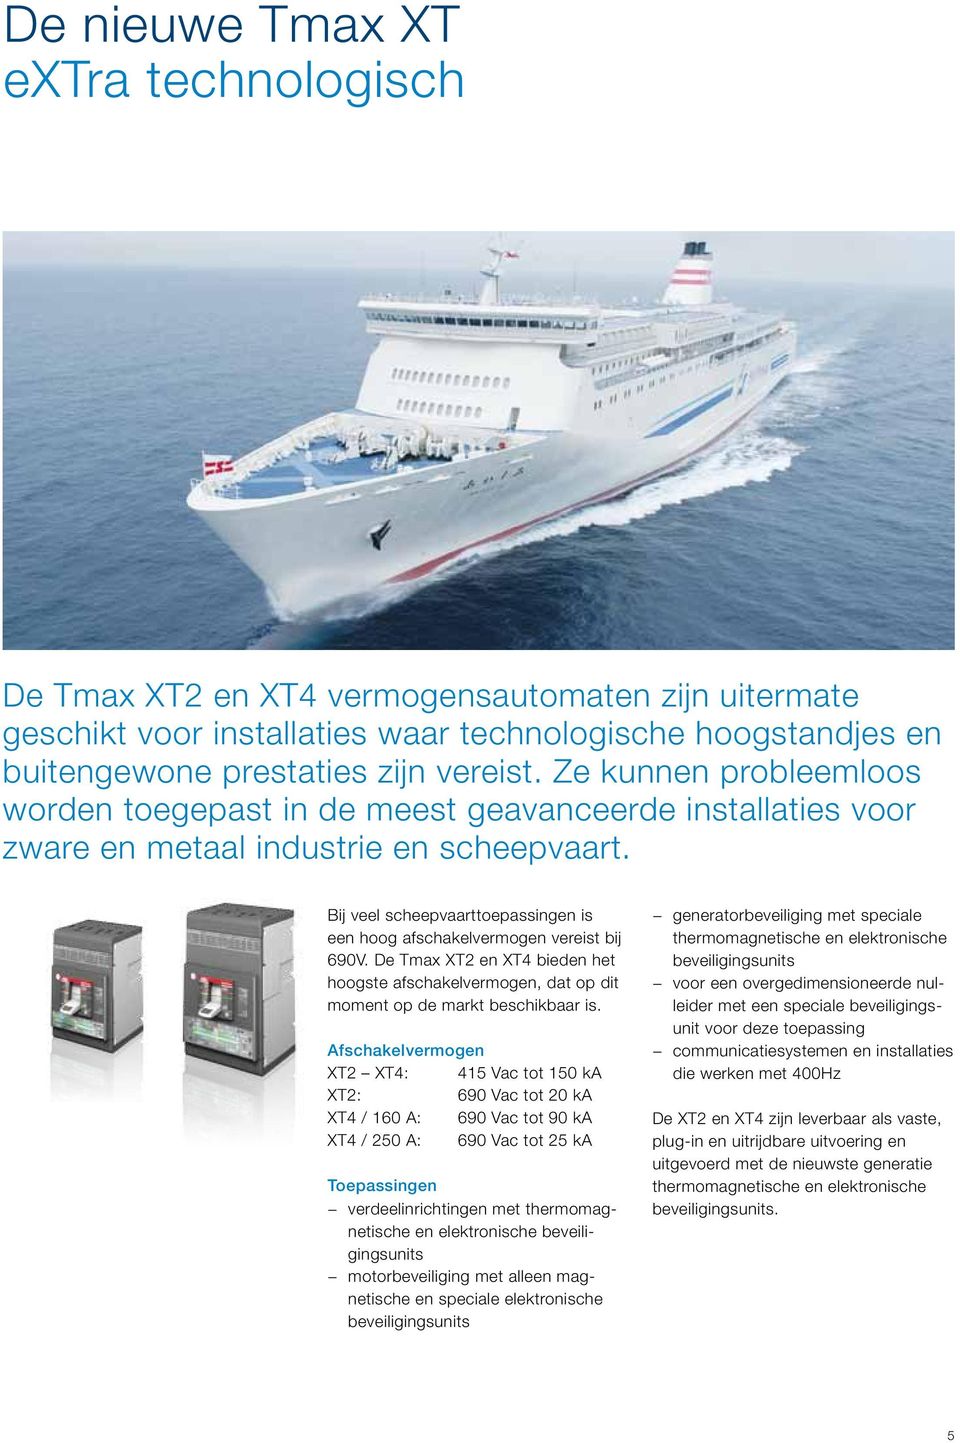 Bij veel scheepvaarttoepassingen is een hoog afschakelvermogen vereist bij 690V. De Tmax XT2 en XT4 bieden het hoogste afschakelvermogen, dat op dit moment op de markt beschikbaar is.